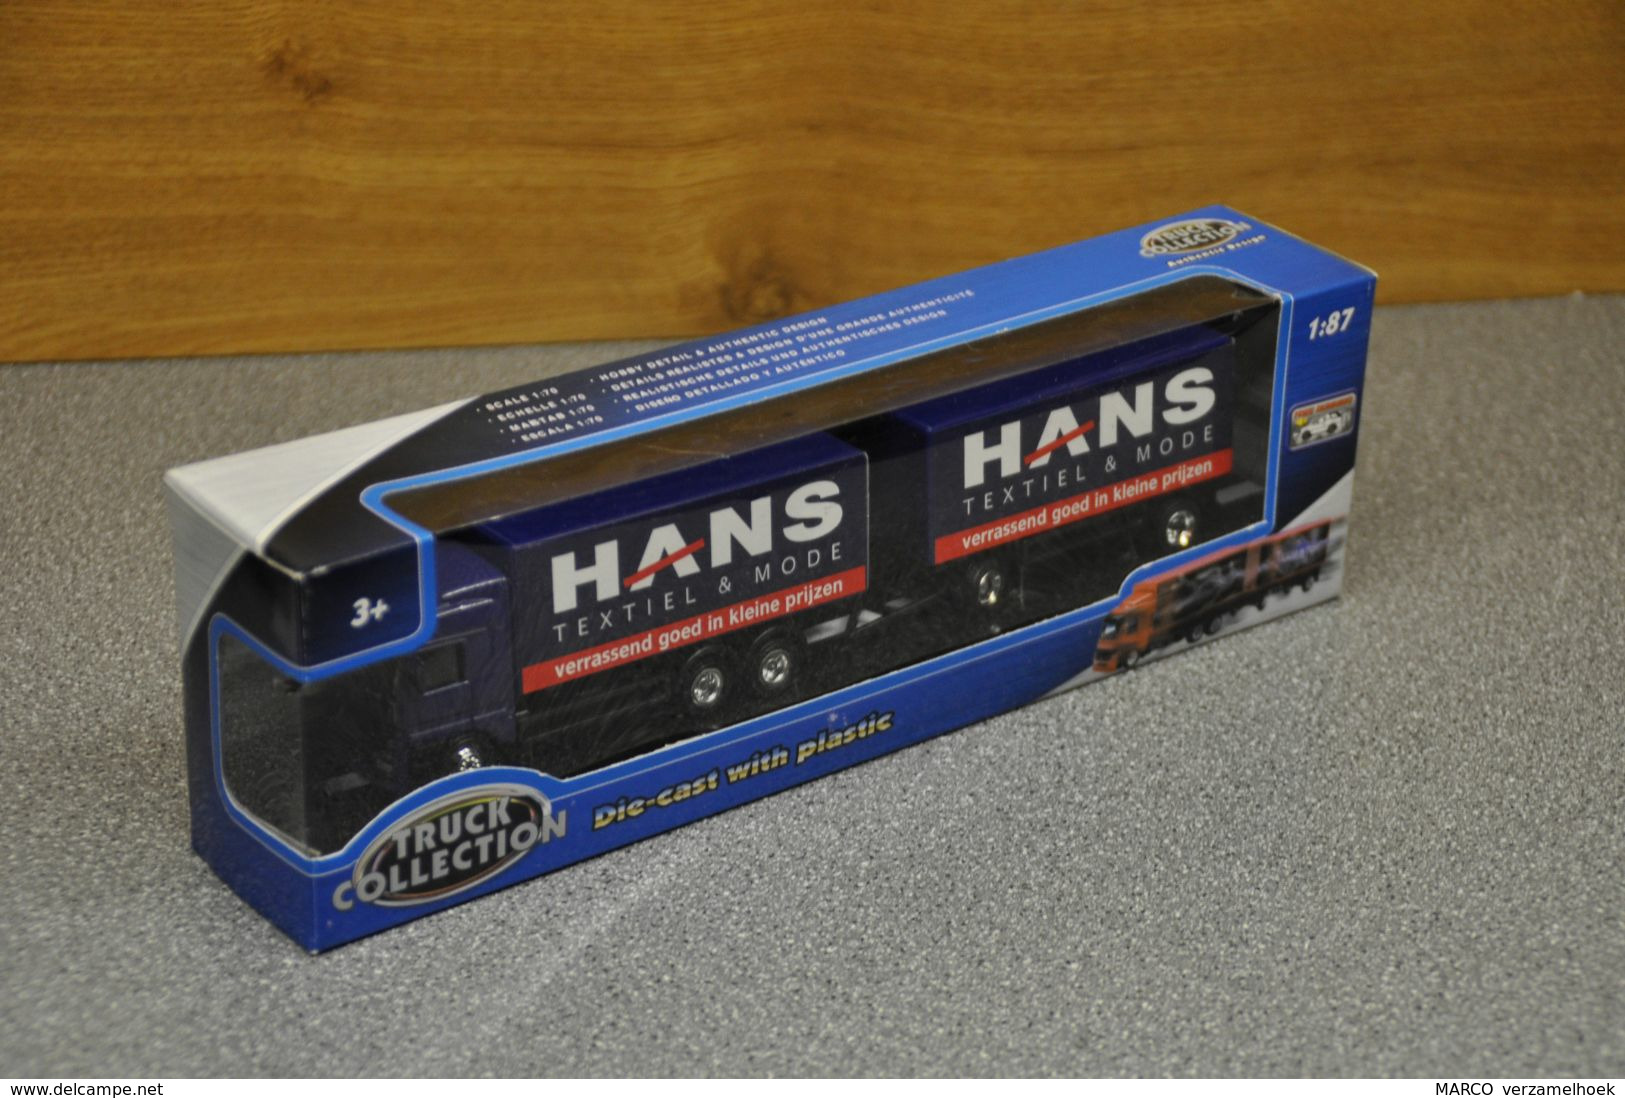 Hans Textiel & Mode Teama Toys Scale 1:87 Die Cast Truck Collection - Camions, Bus Et Construction